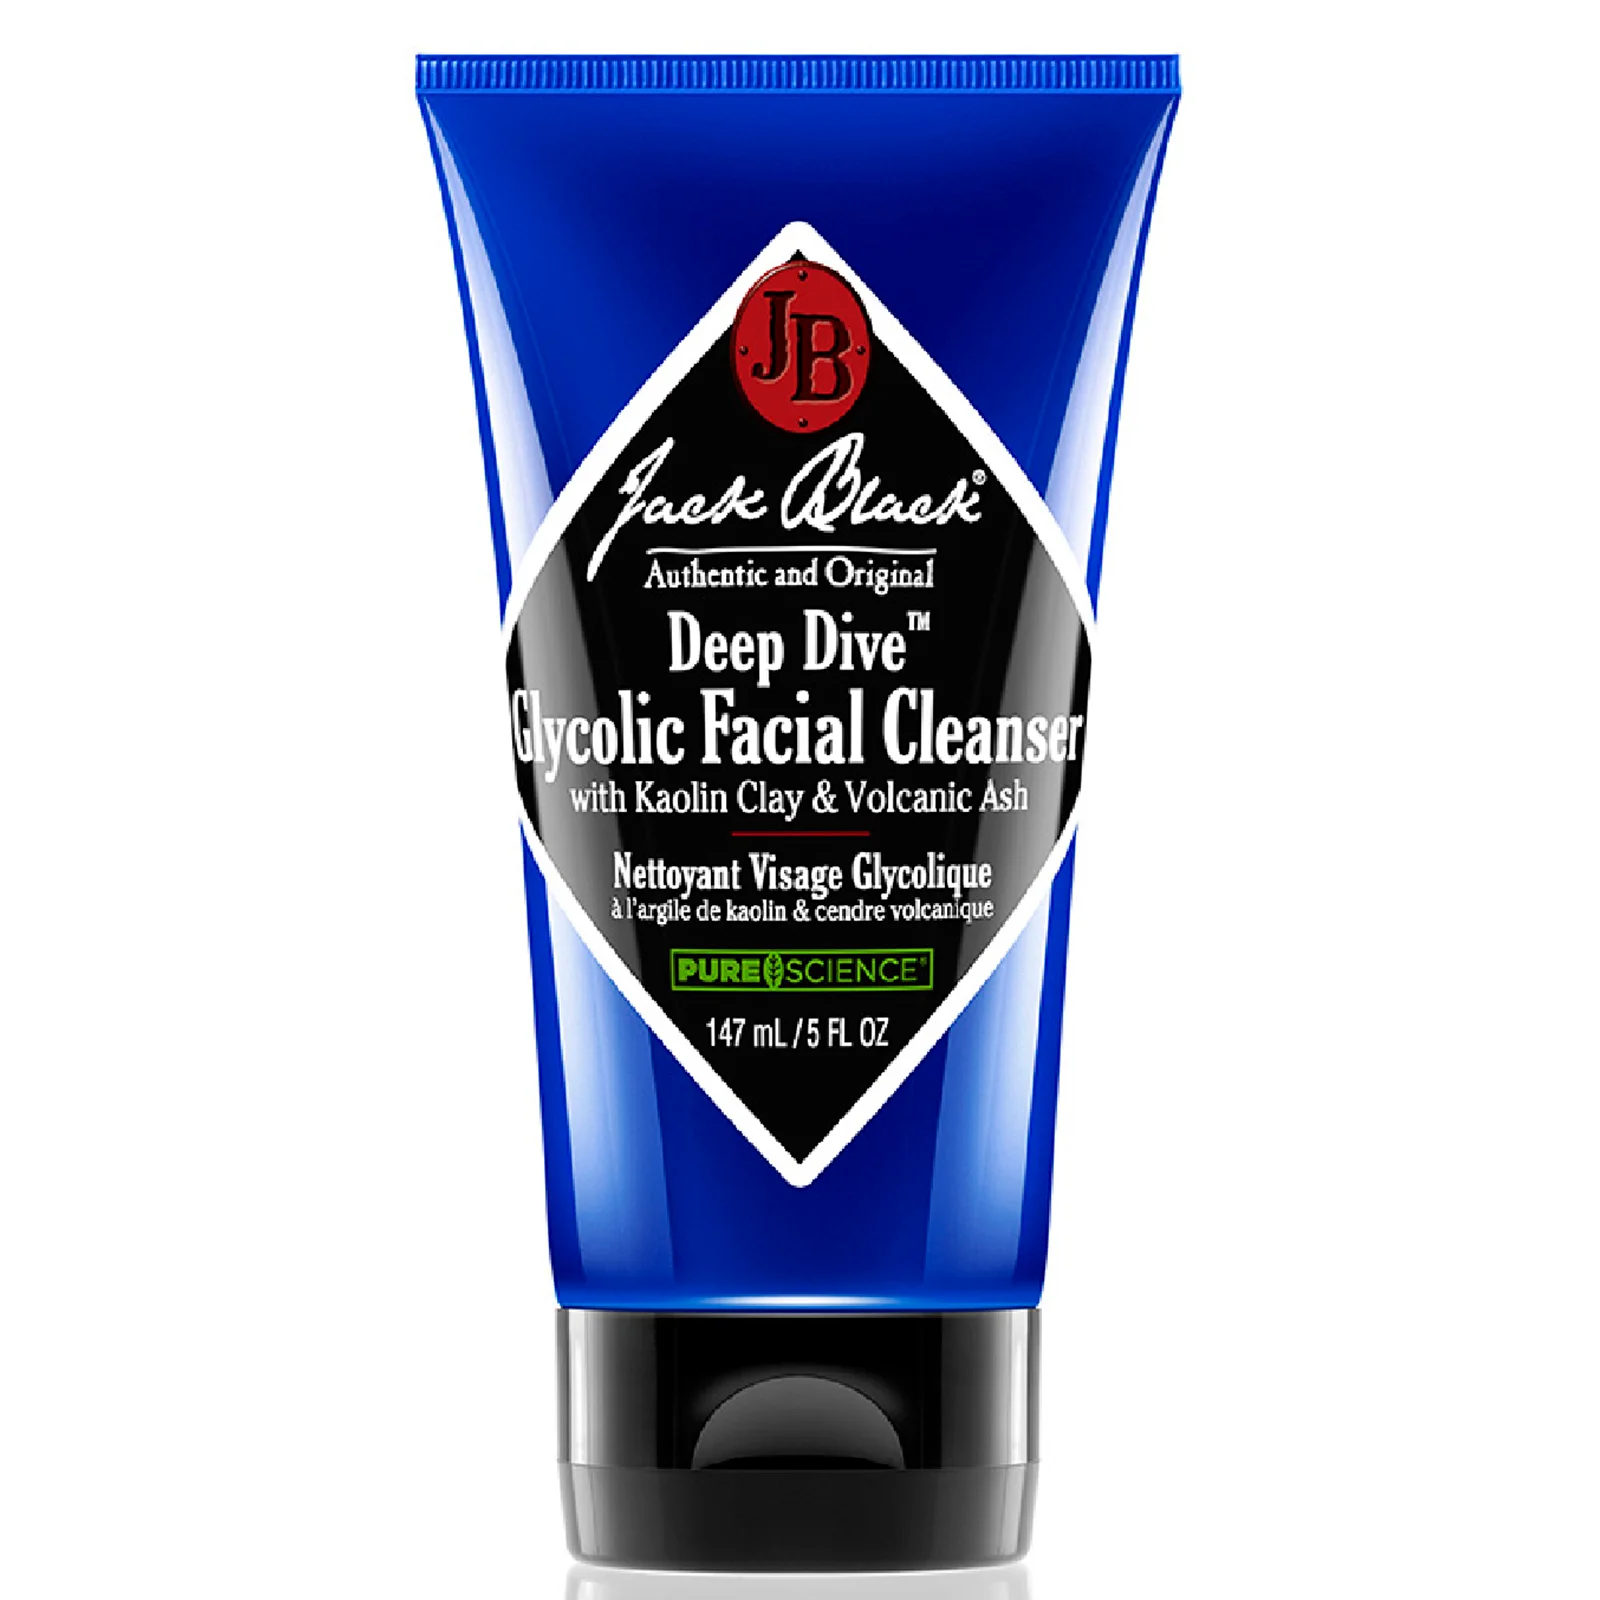 Jack Black Deep Dive Glycolic Facial Cleanser Image 1